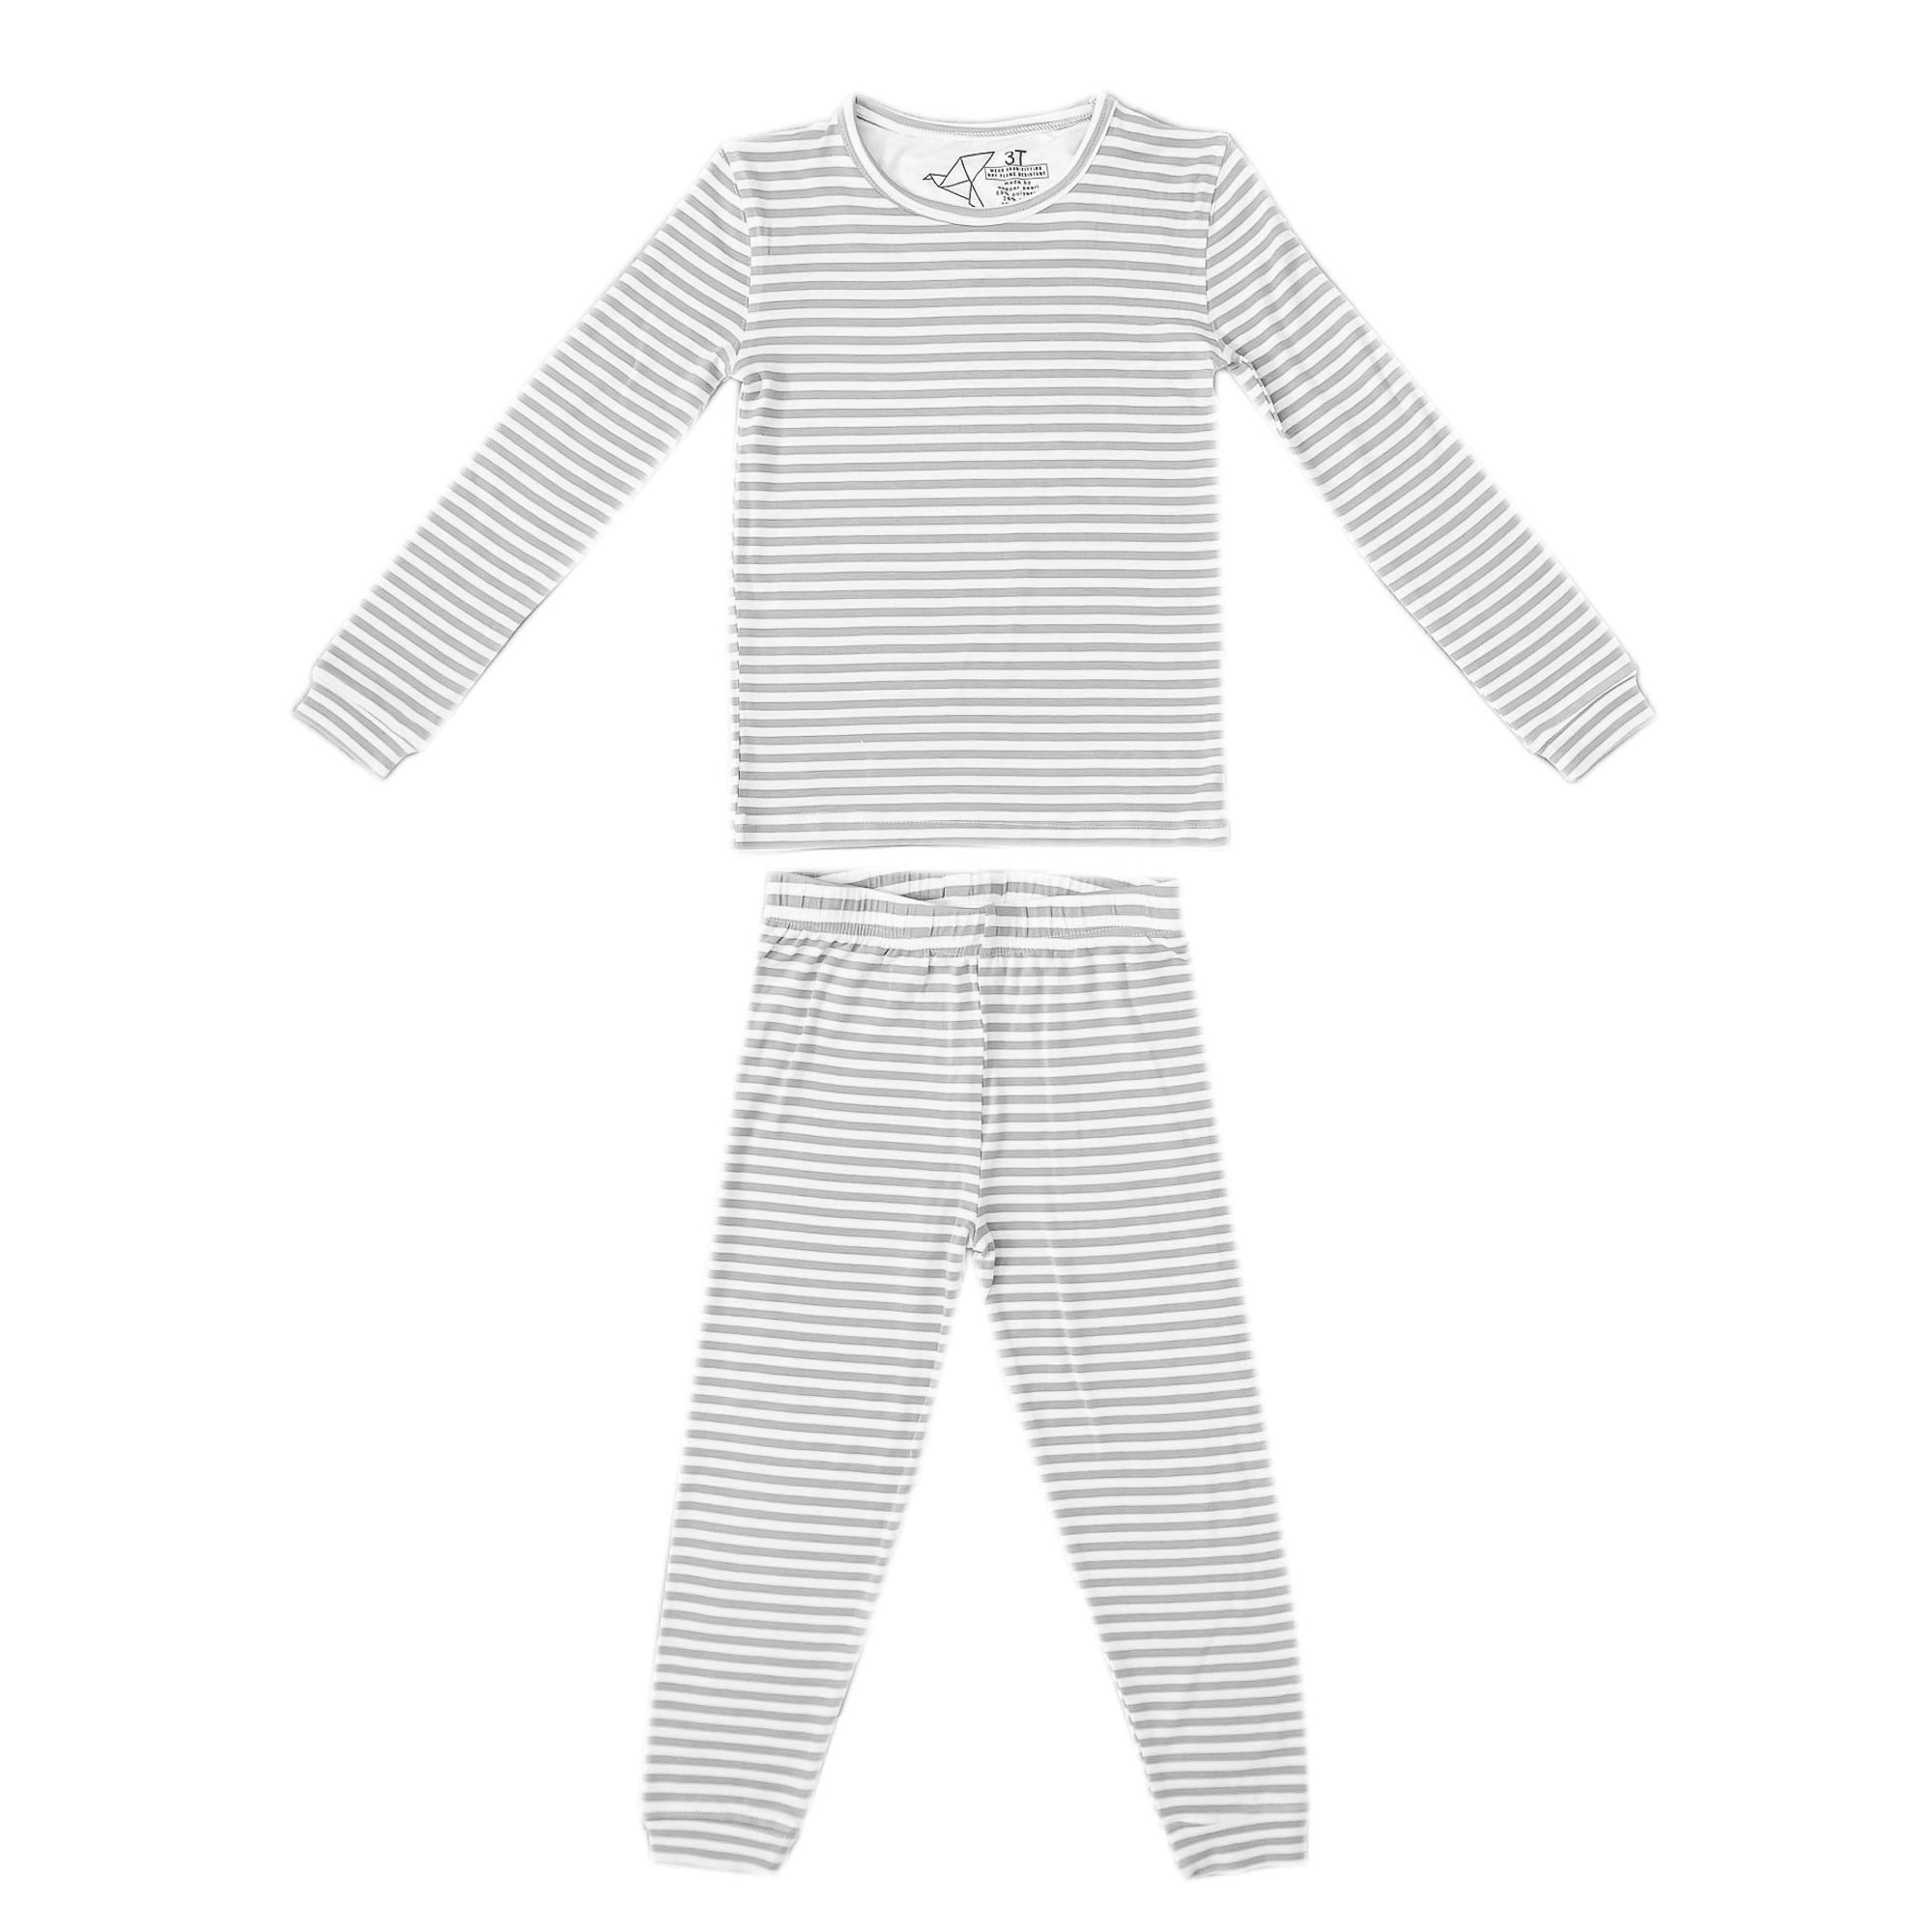 2pc Long Sleeve Pajama Set - Everest